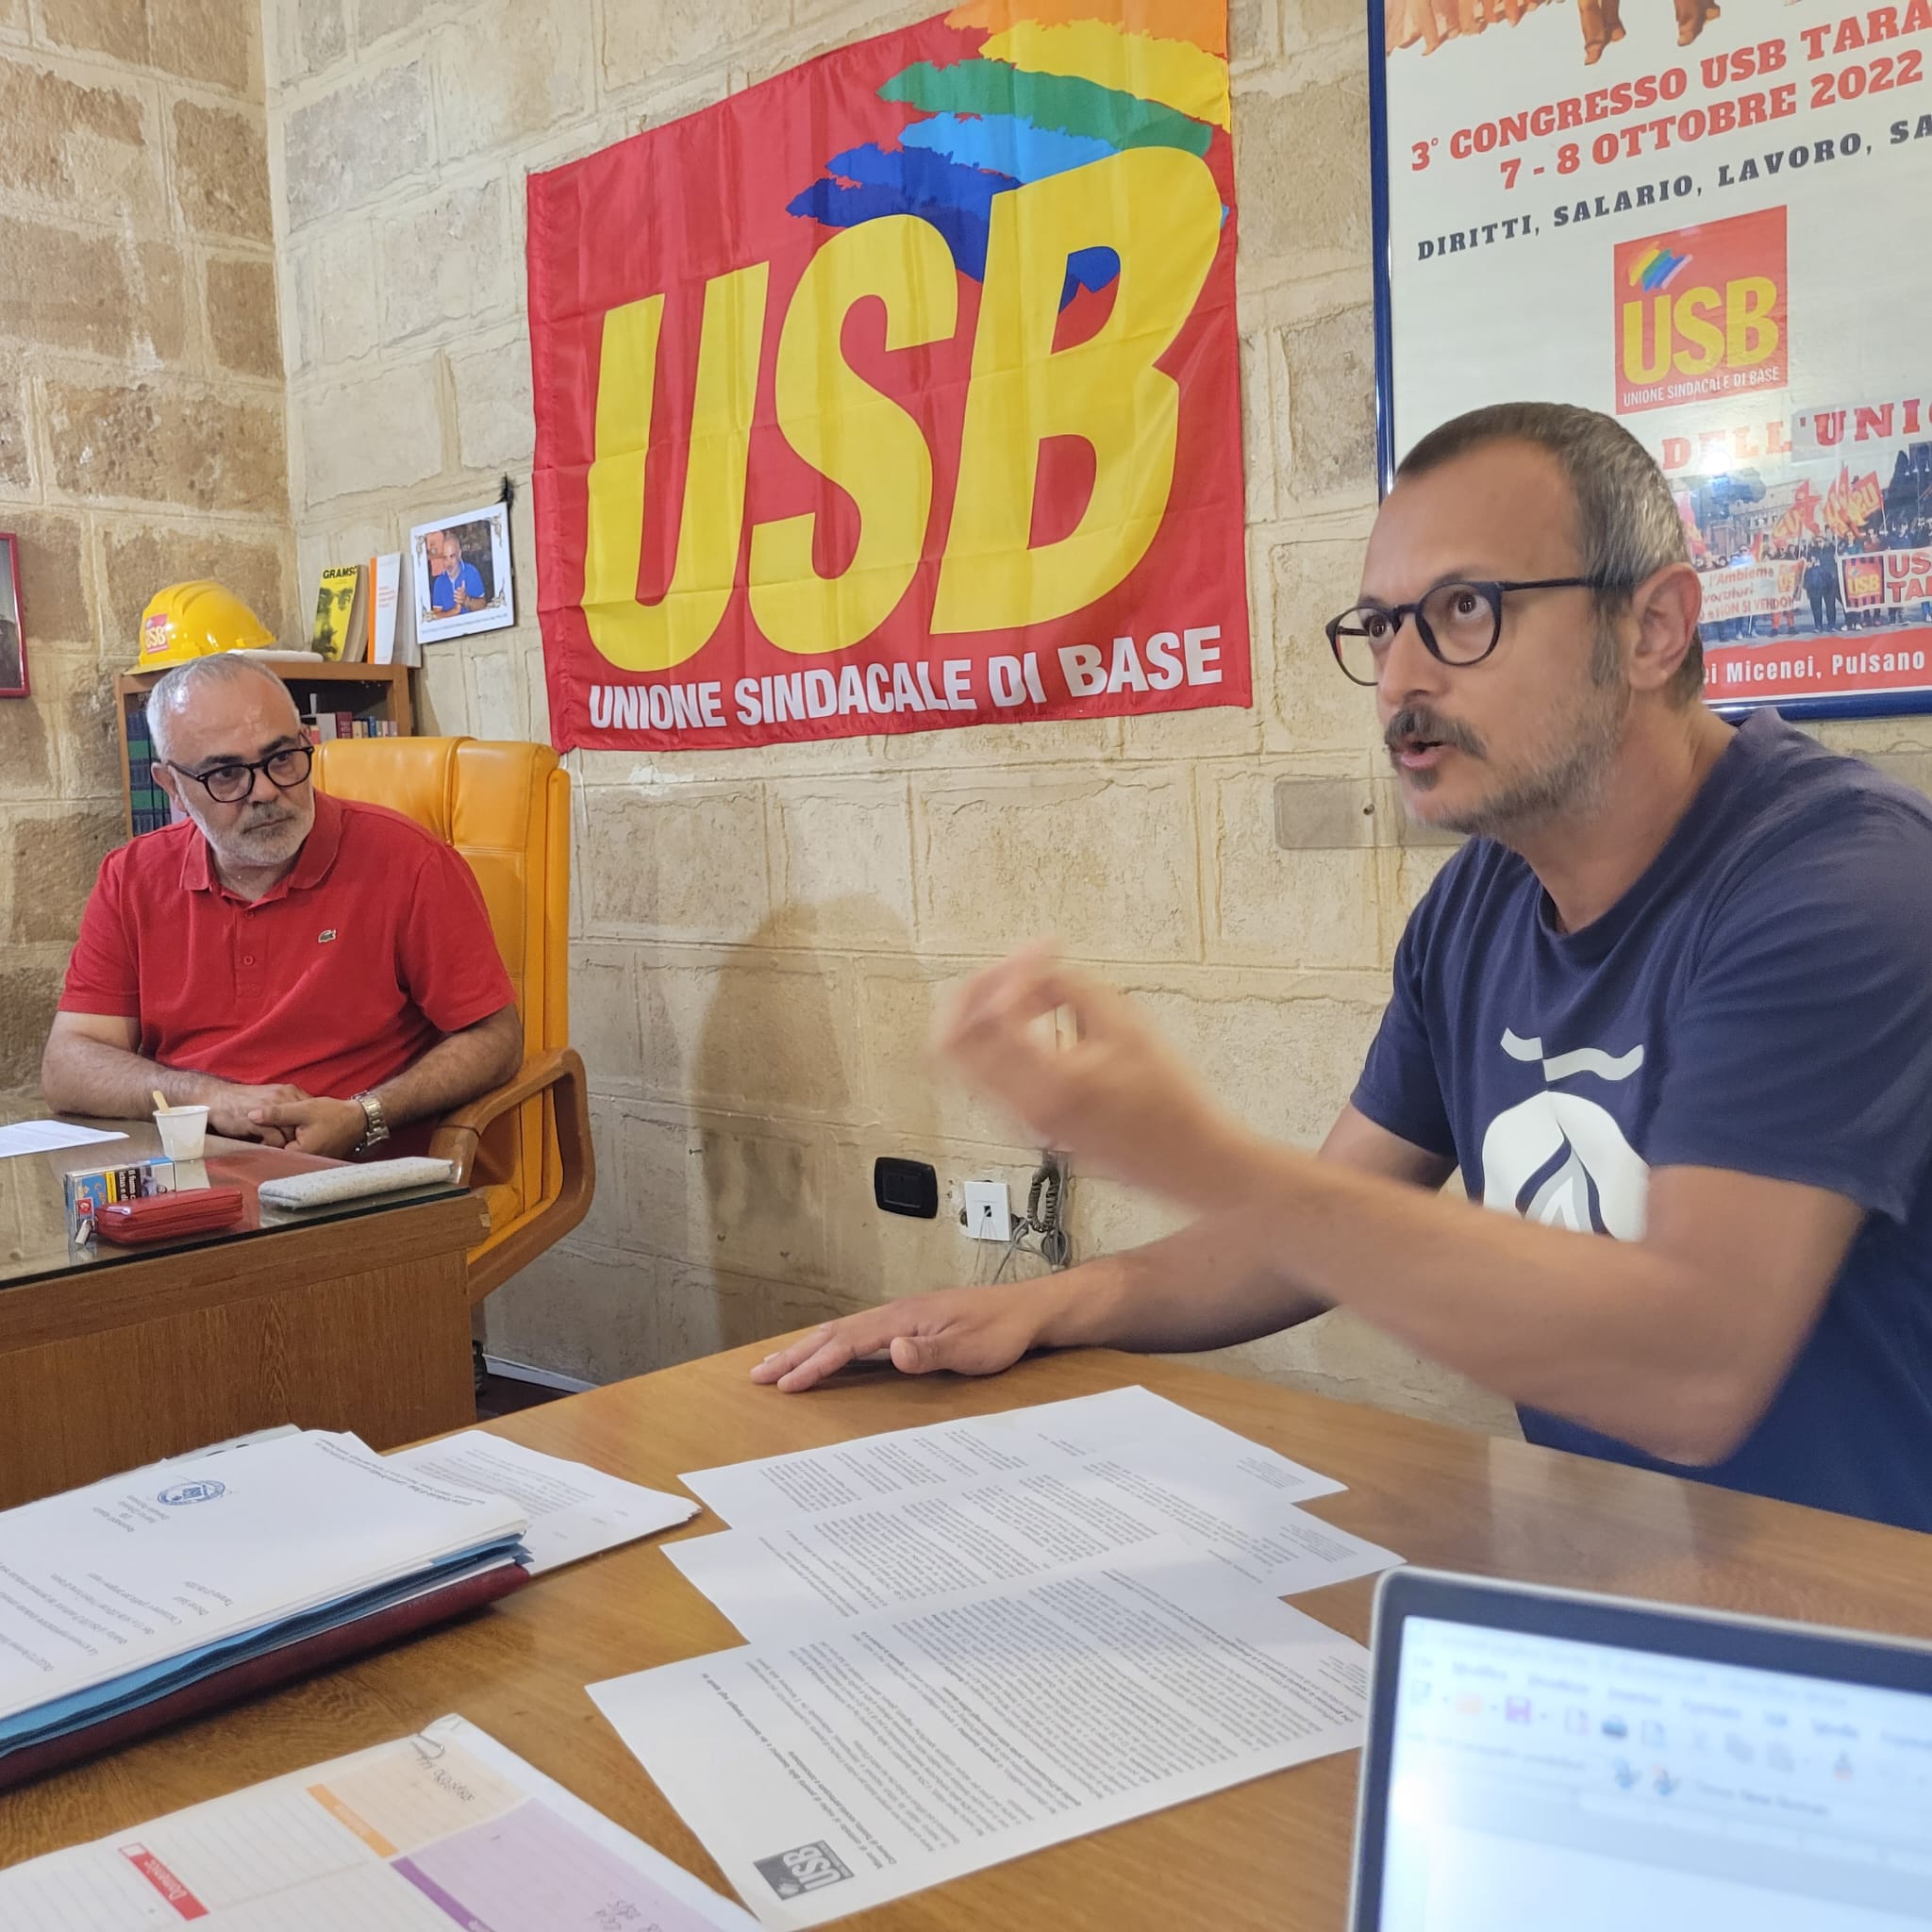 USB su appalti al Comune di Taranto